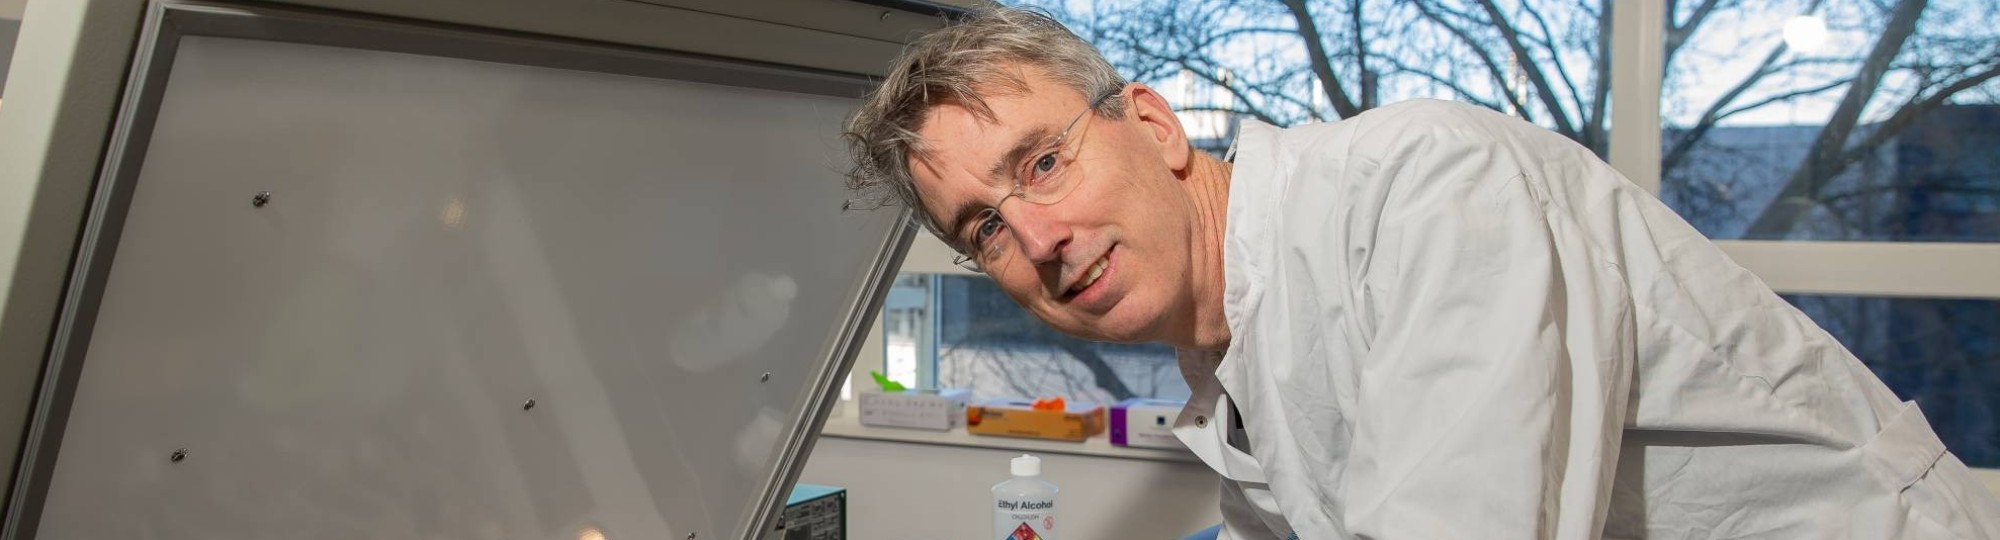 CEO Koen Dechering van TropiQ houdt zich bezig met de ontwikkeling van een nieuw medicijn tegen malaria. Hij levert ook een bijdrage aan de minor Drug Discovery